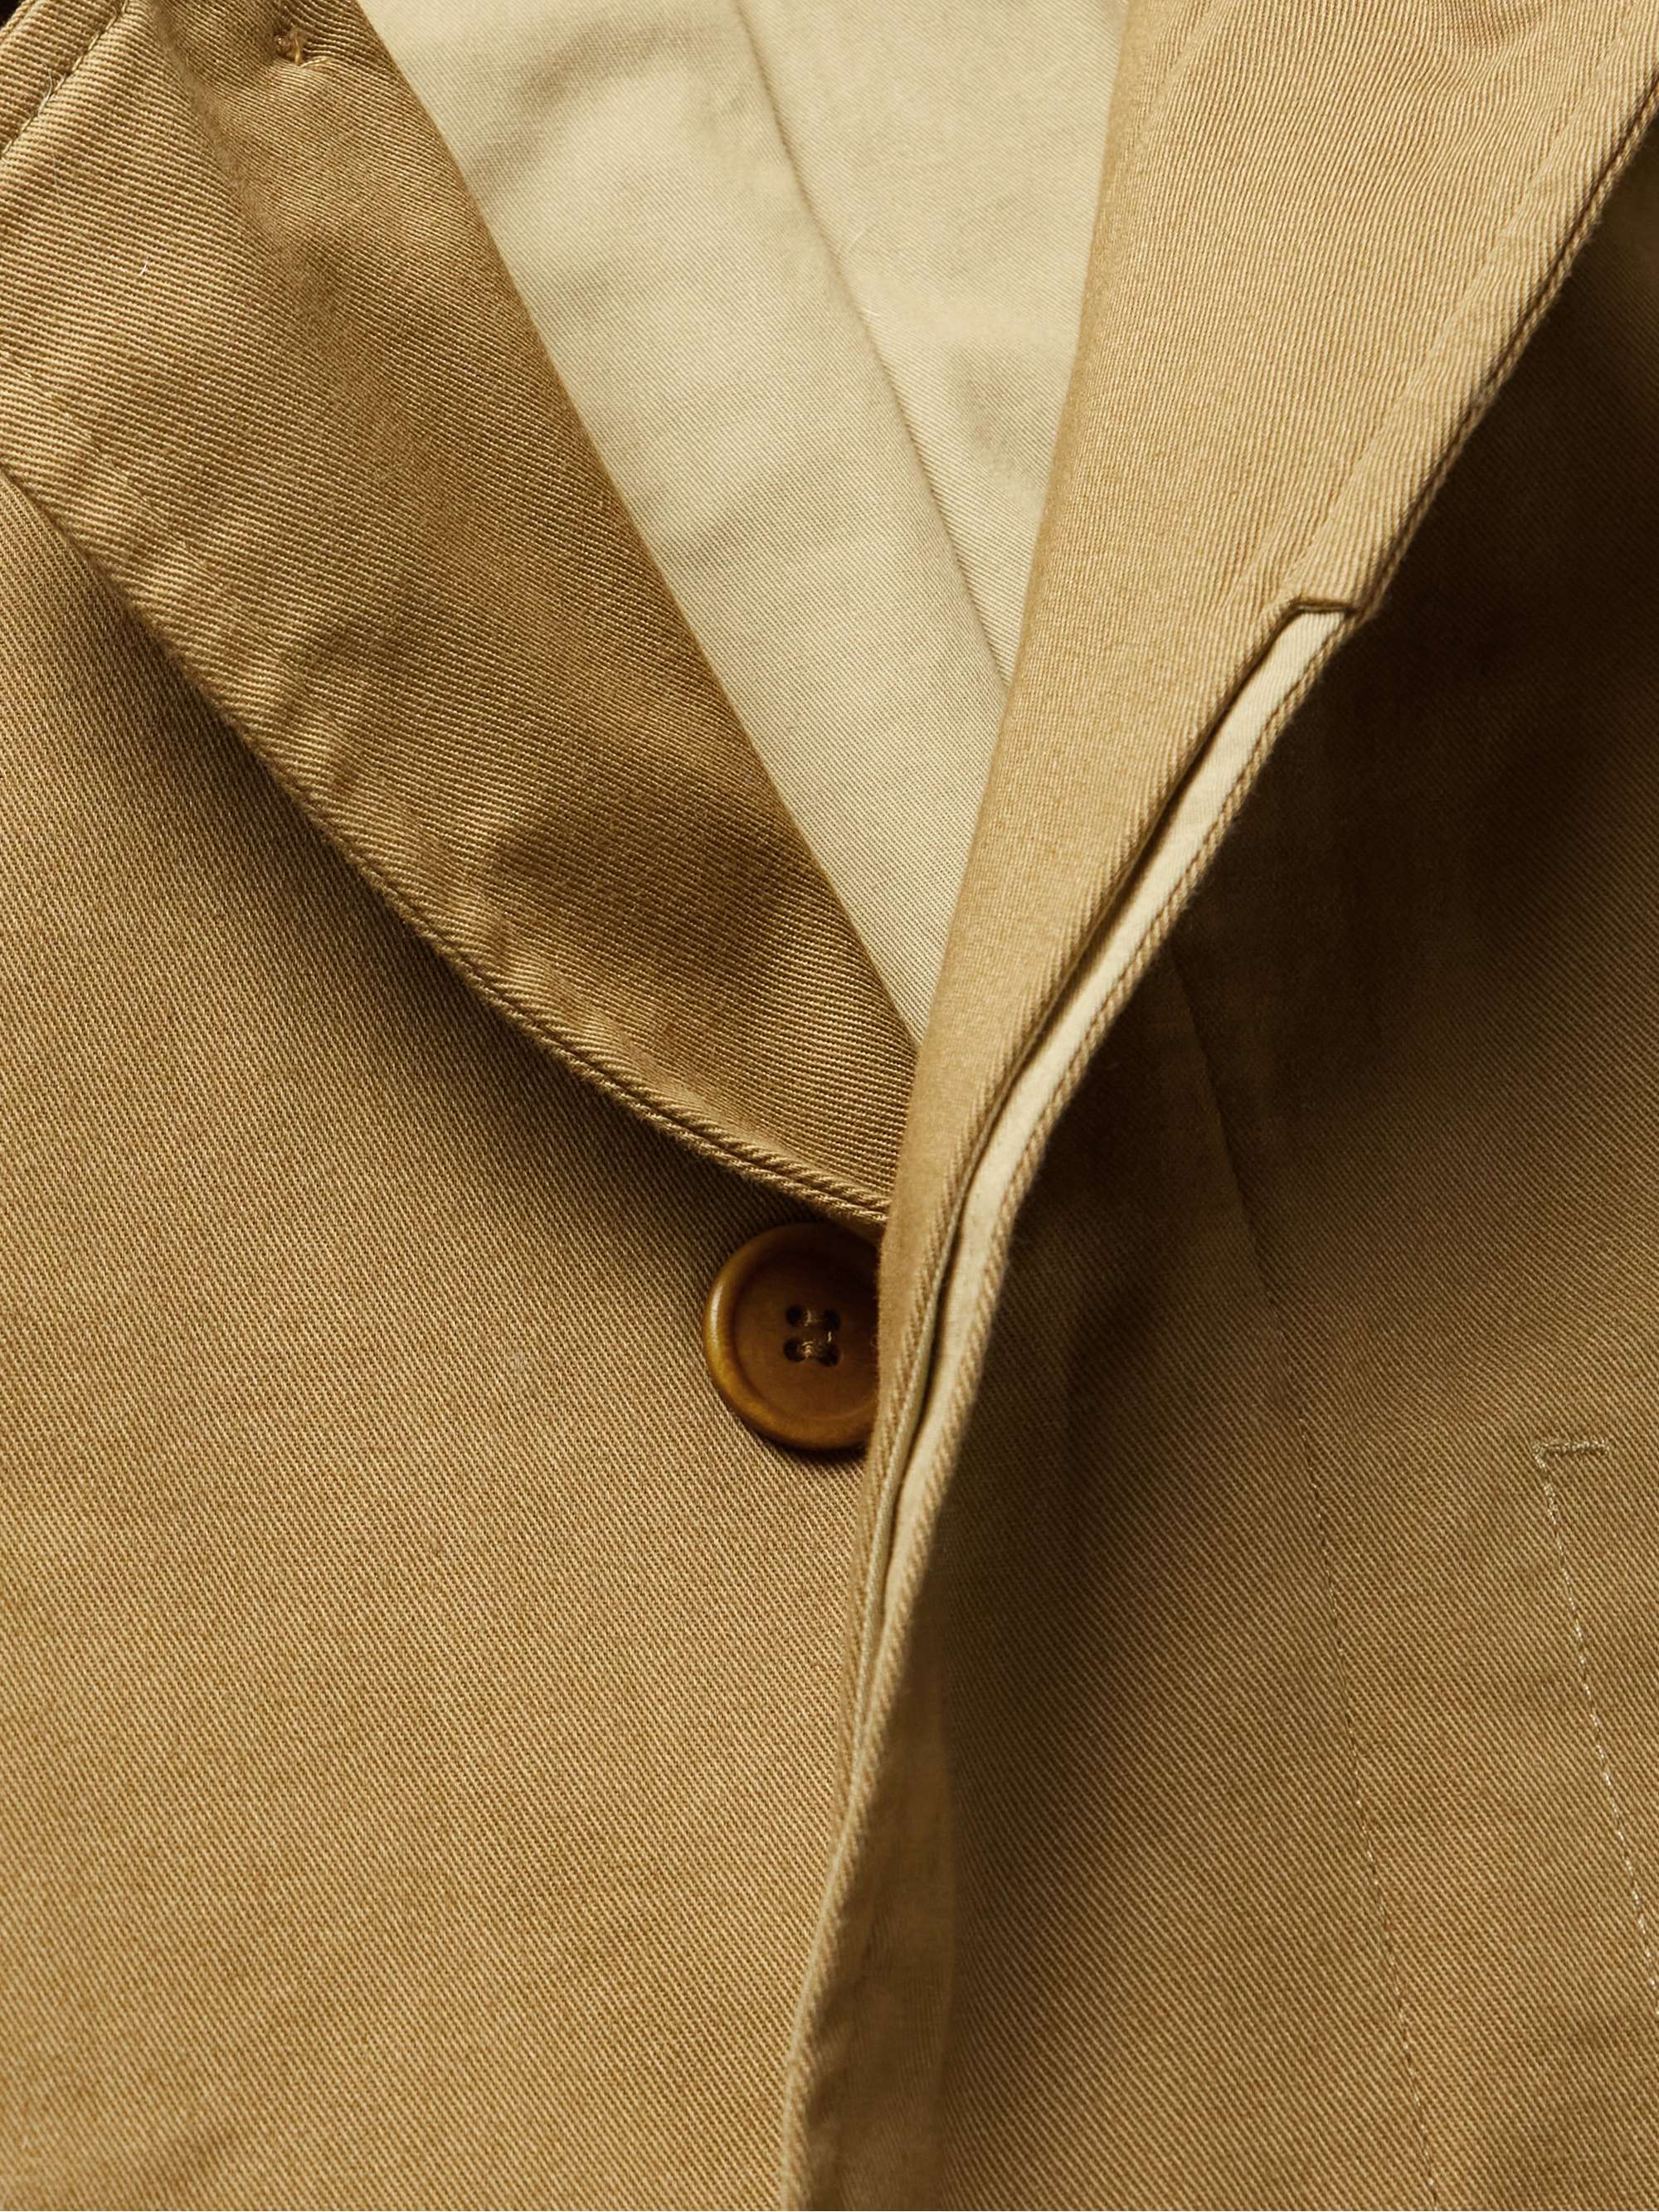 ISABEL MARANT Pierry Oversized Cotton-Twill Jacket